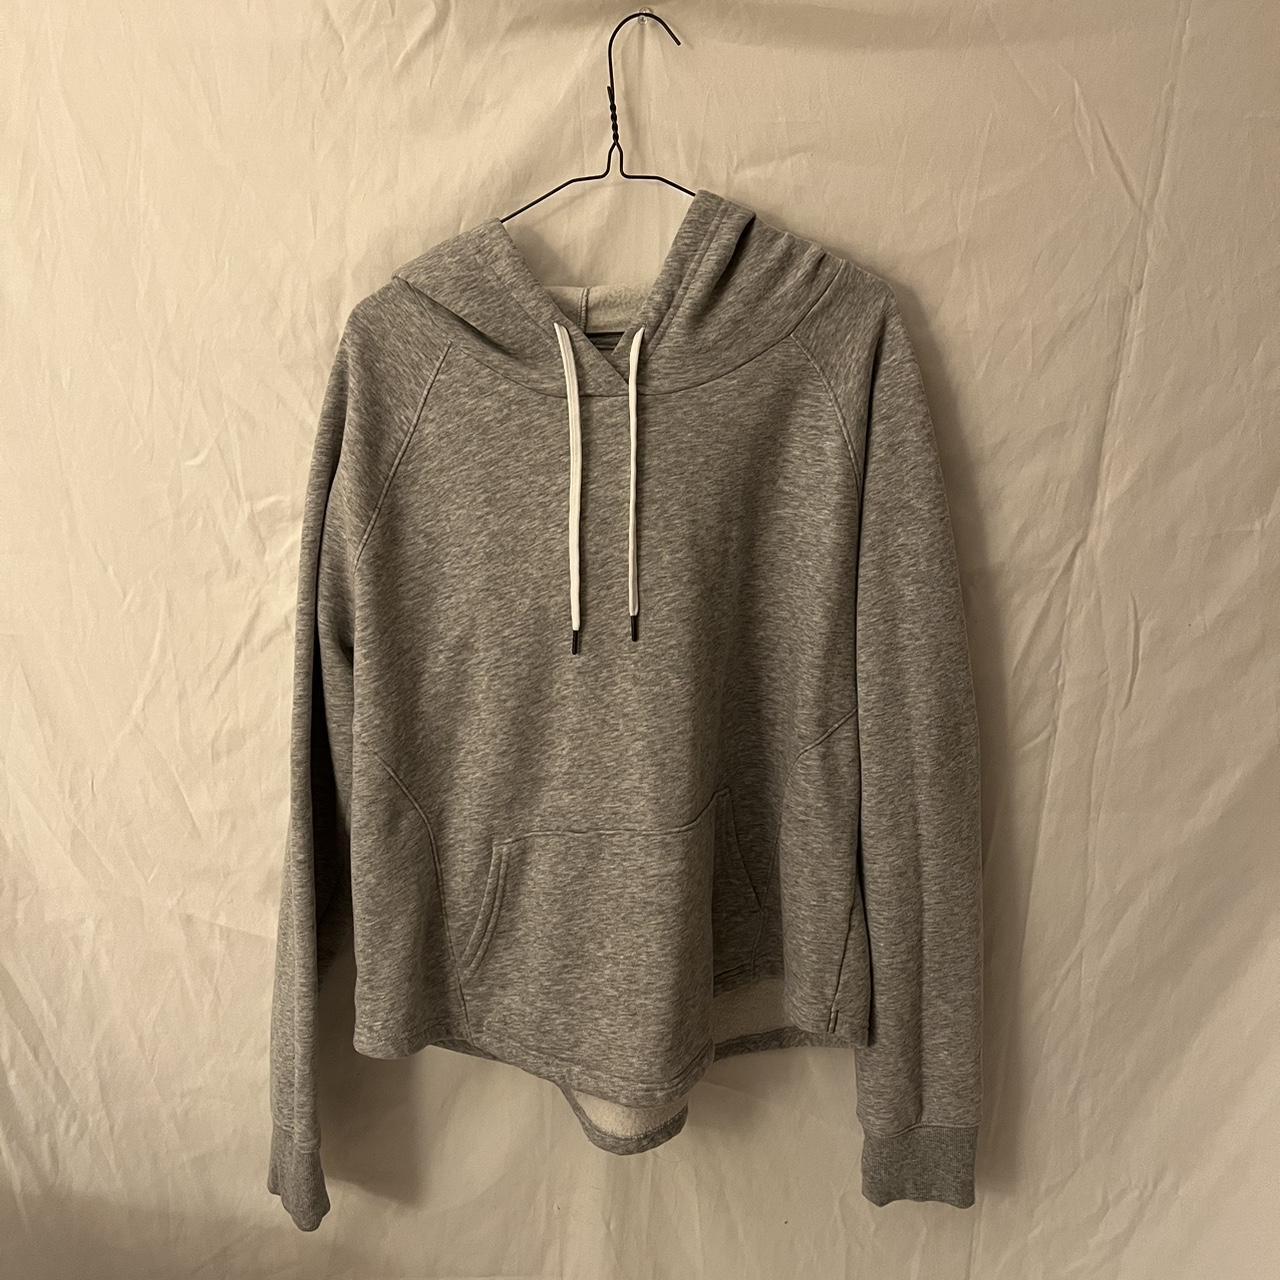 Tek Gear grey ultra soft fleece sweatshirt size XL. - Depop